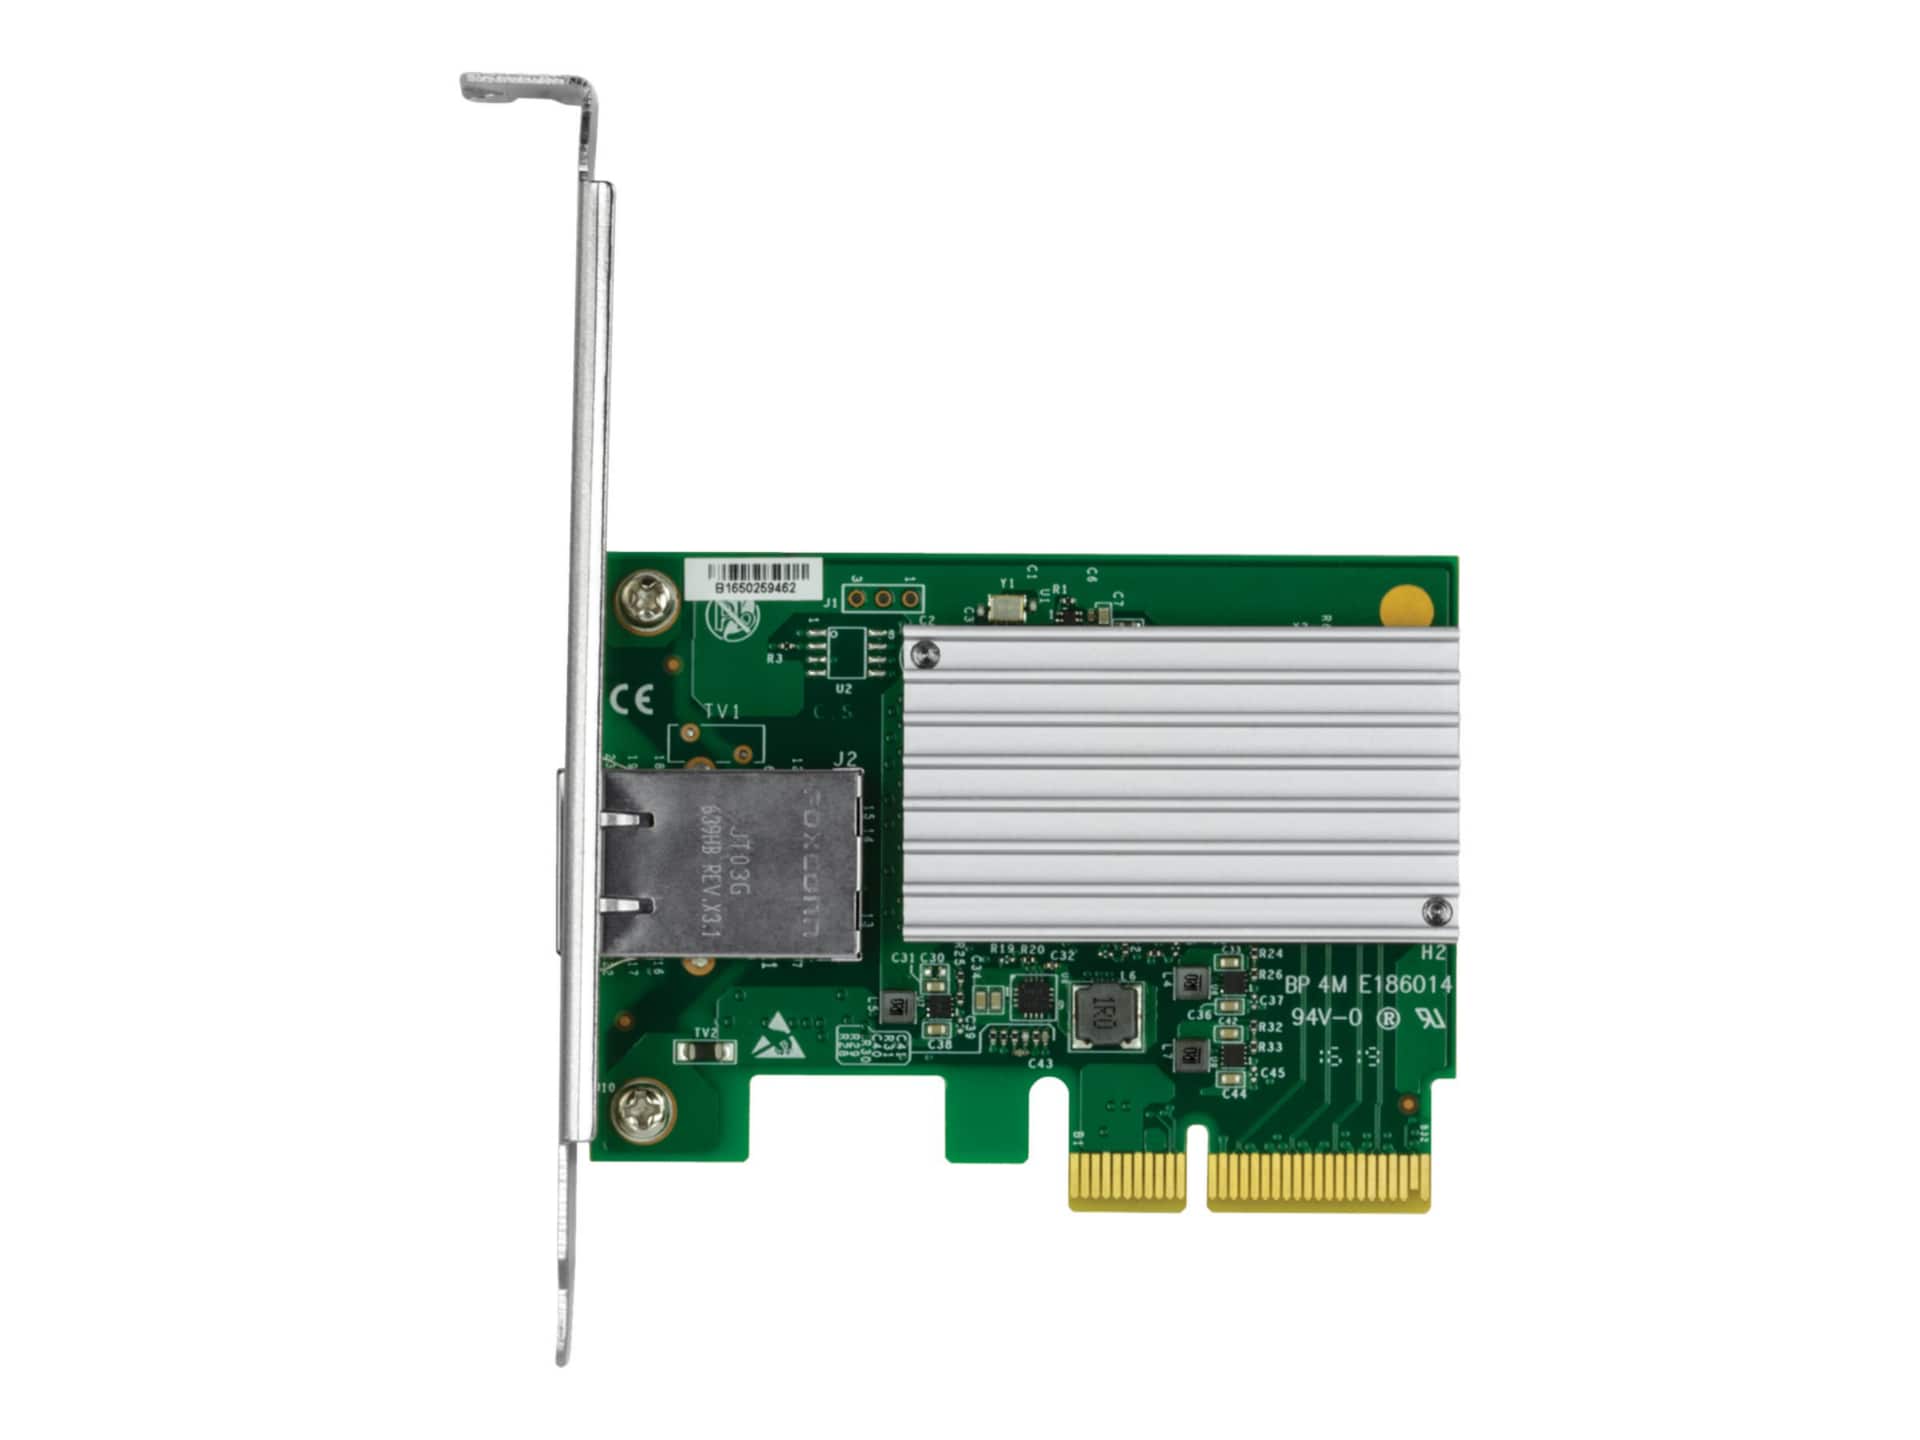 Carte réseau PCIe x4 à 1 port 10 GbE - Adaptateurs réseau